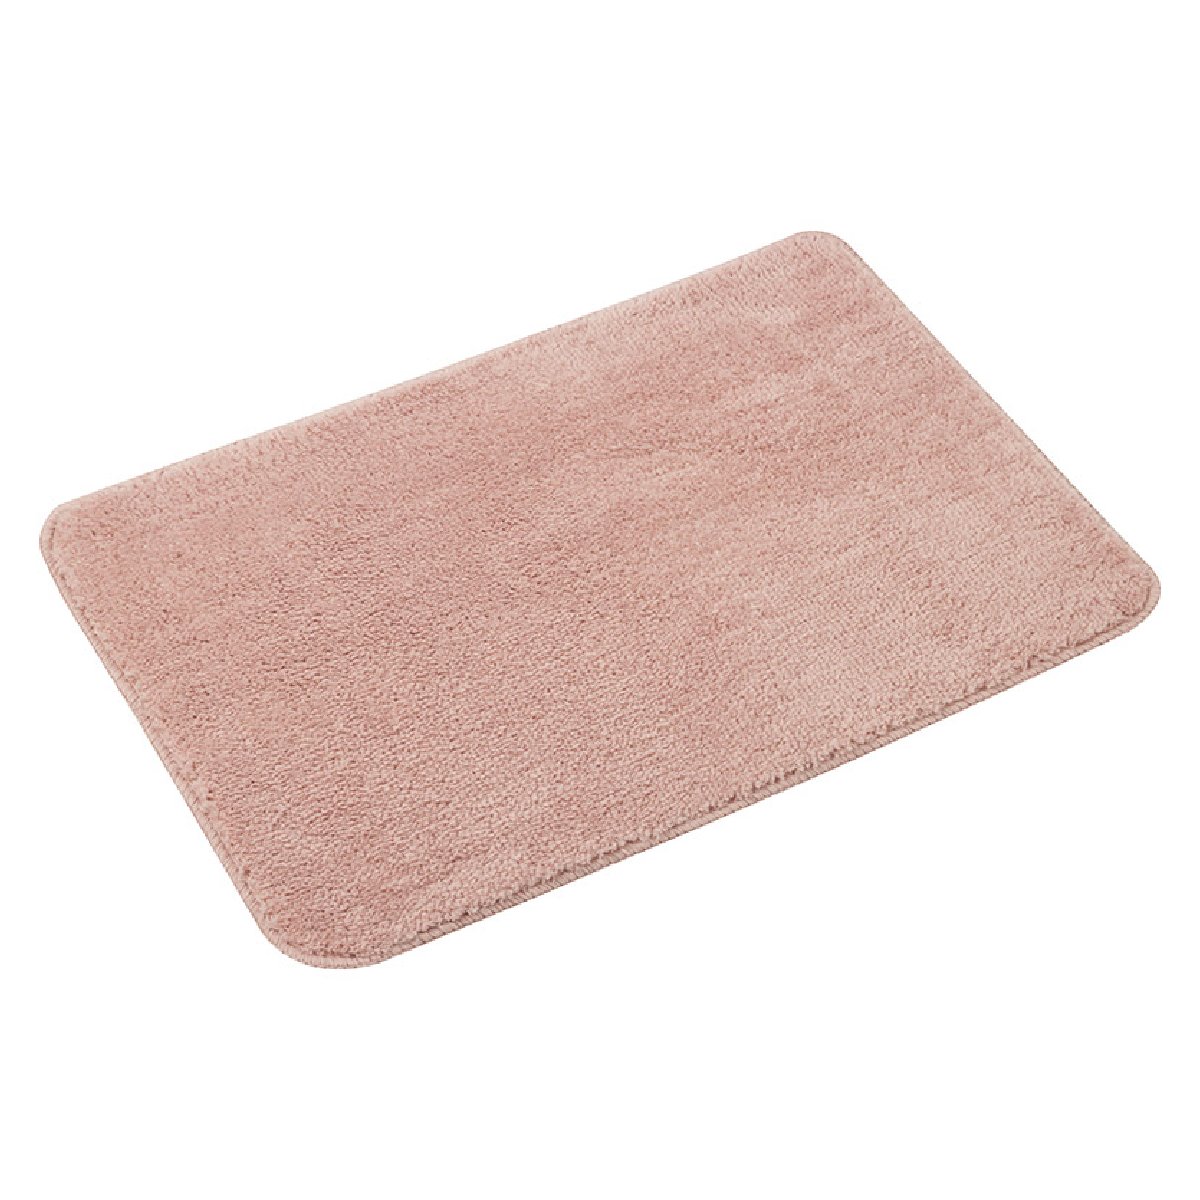 Коврик для ванной Pastel , 40x60 см, цвет-розовый (102500)Купить